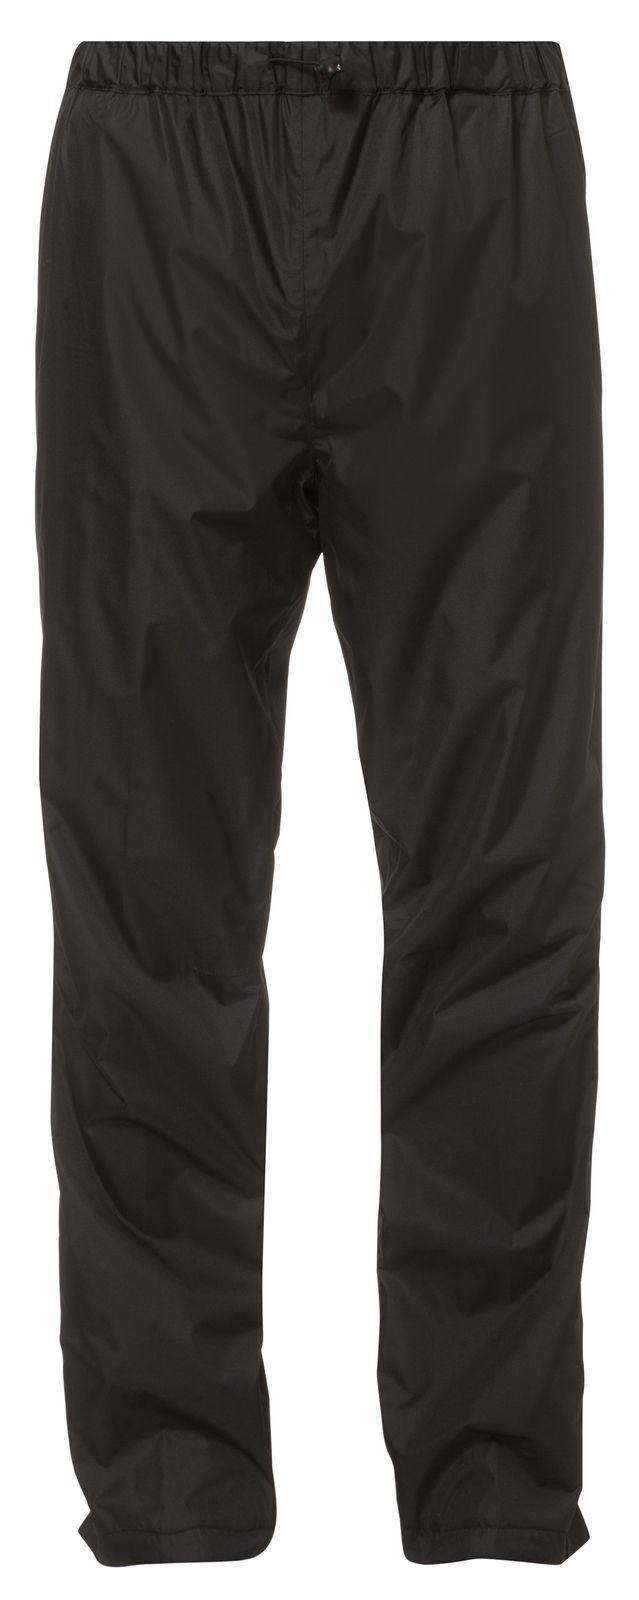 Vaude Fluid Pants II - Waterproof trousers - Men's